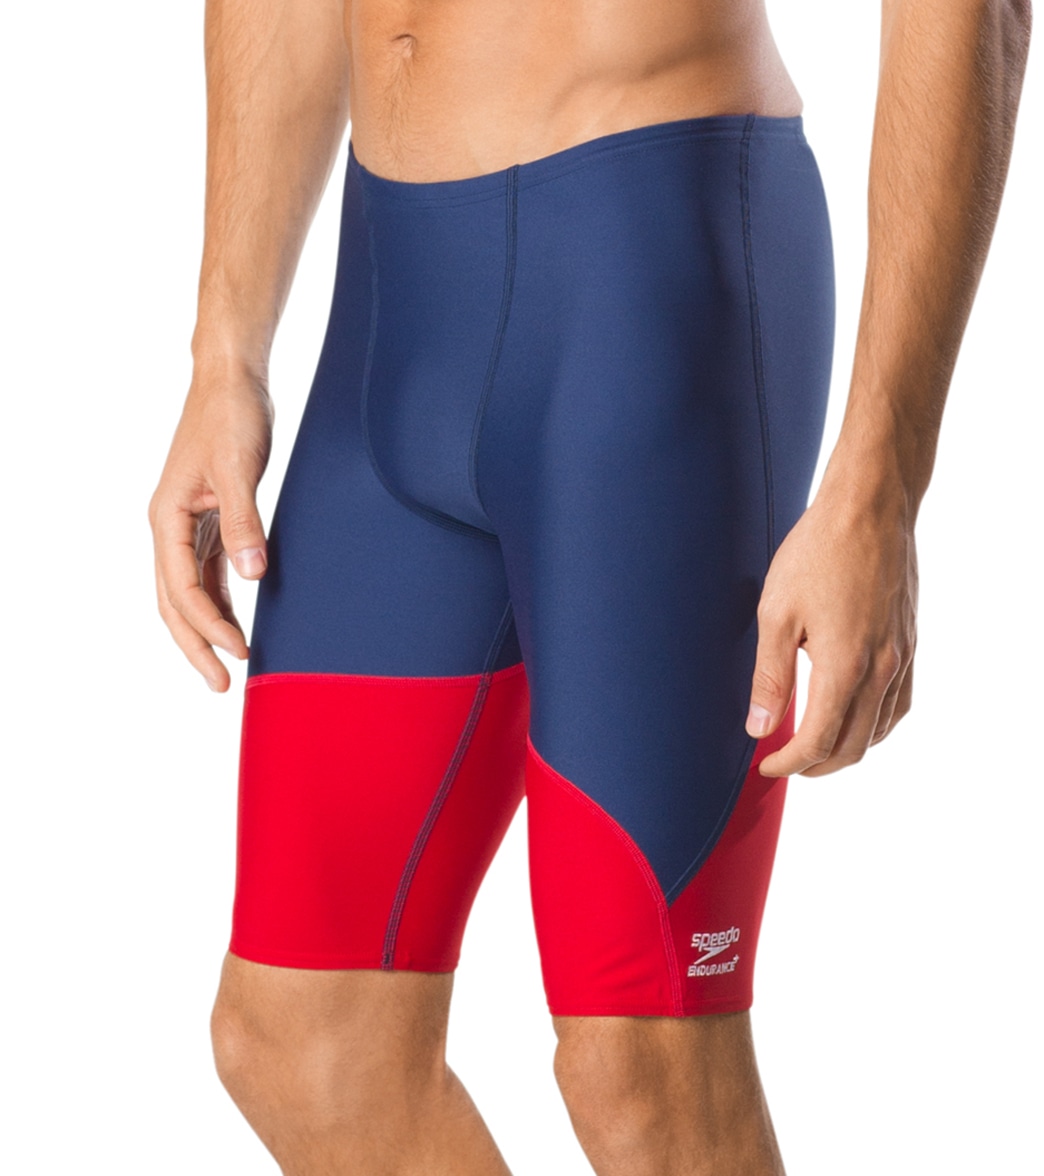 Speedo Men's Spark Splice Jammer Swimsuit - Navy/Red 22 Polyester/Pbt - Swimoutlet.com